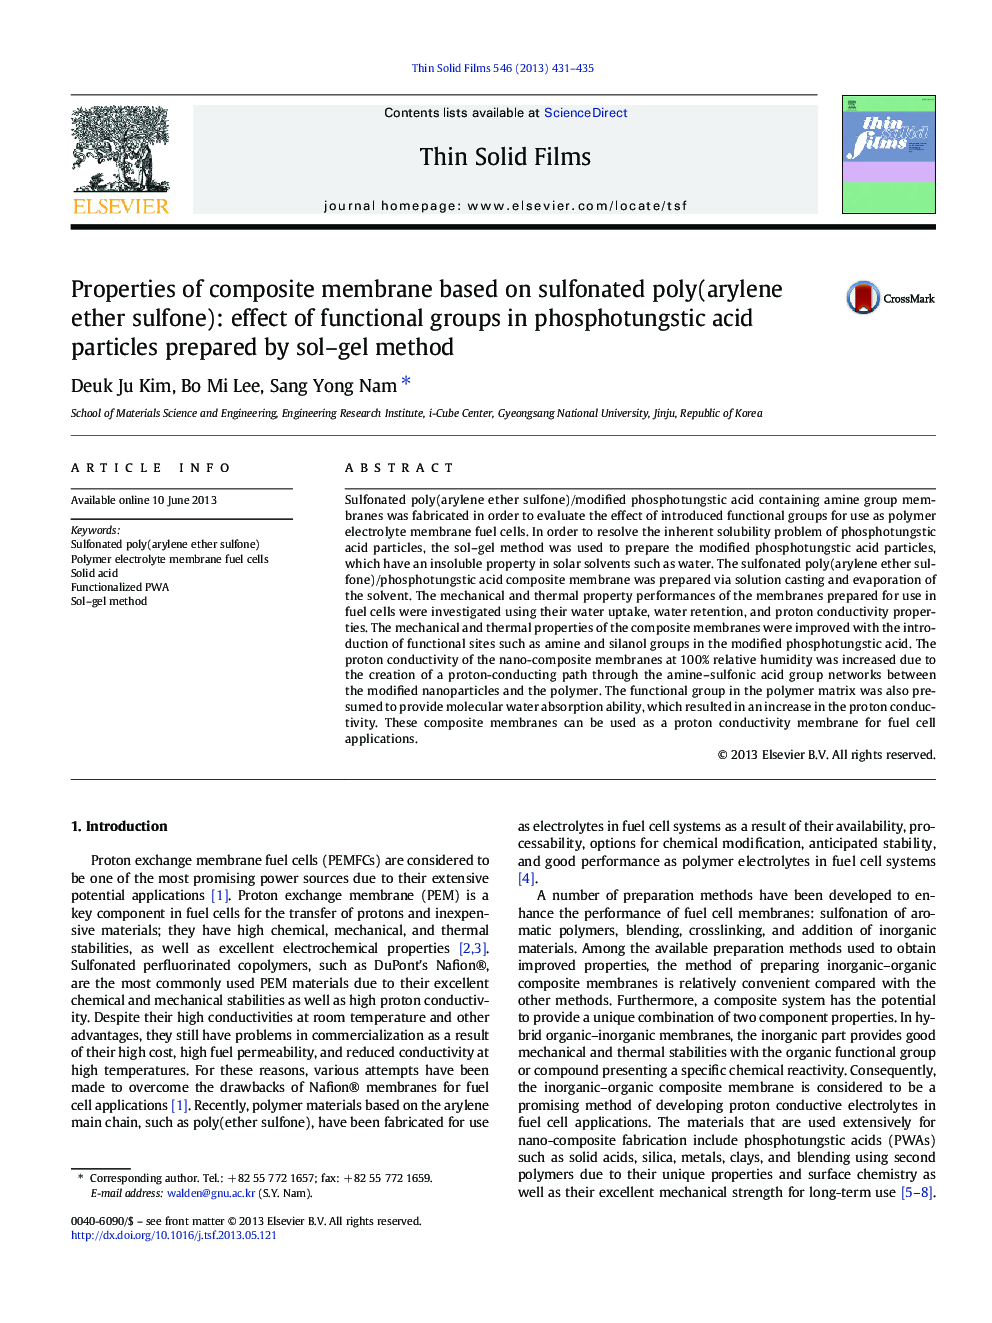 خصوصیات غشای کامپوزیتی بر پایه سولفونیک پلی (آرویلن اتر سولفون): اثر گروه های کاربردی در ذرات اسید فسفات ورشو که توسط روش سل ژل تهیه شده است 